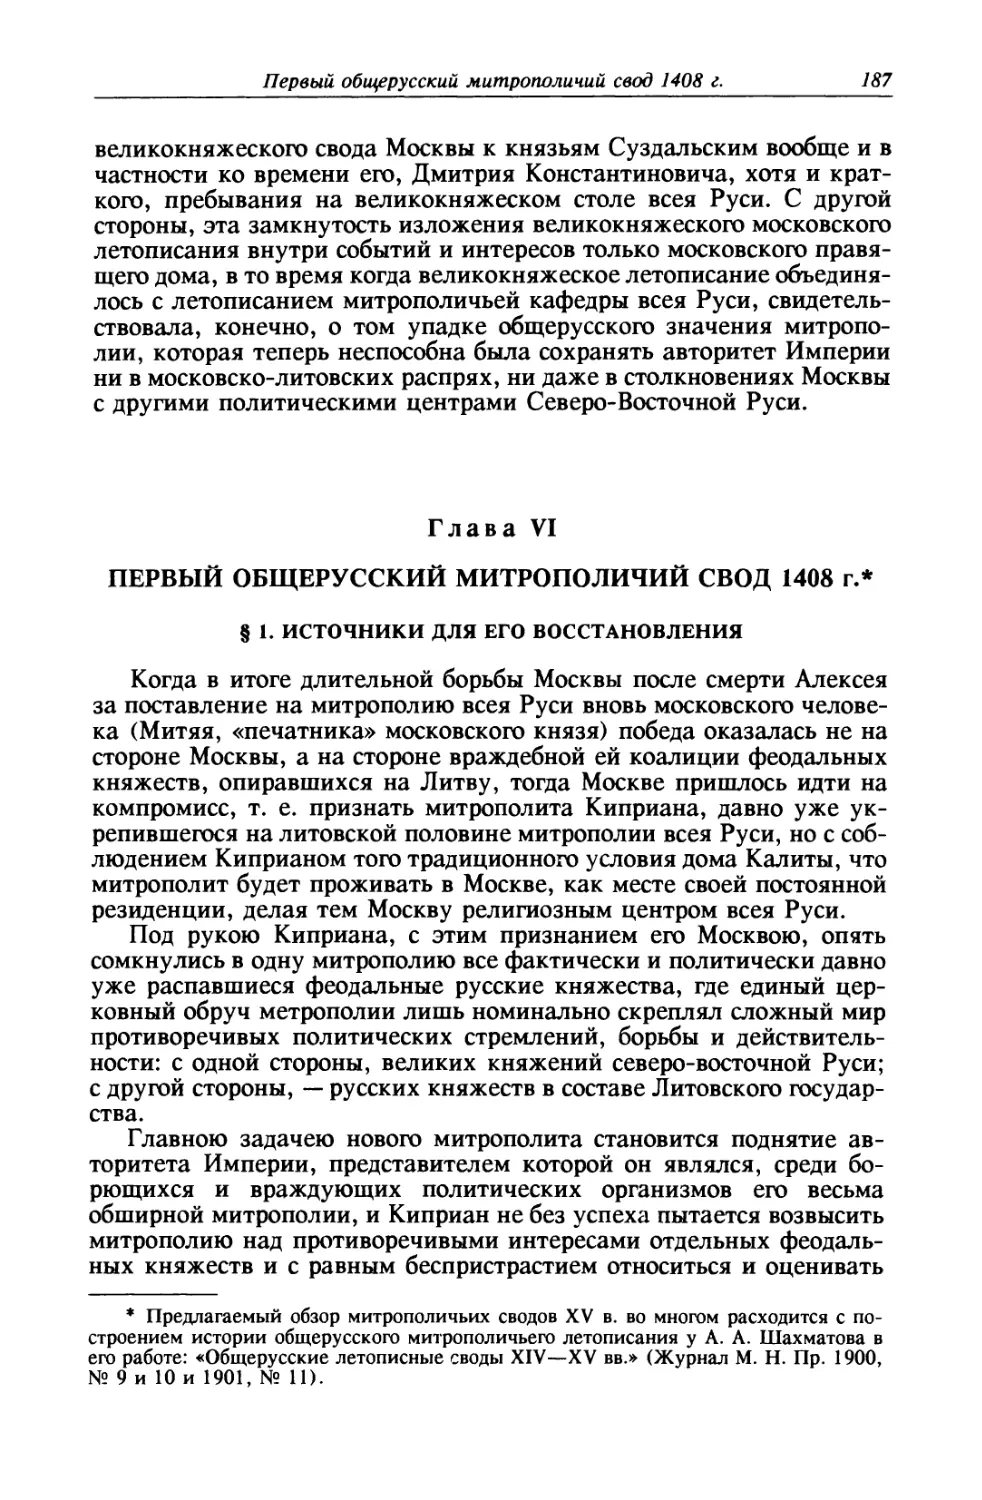 Глава VI. Первый общерусский митрополичий свод 1408 г